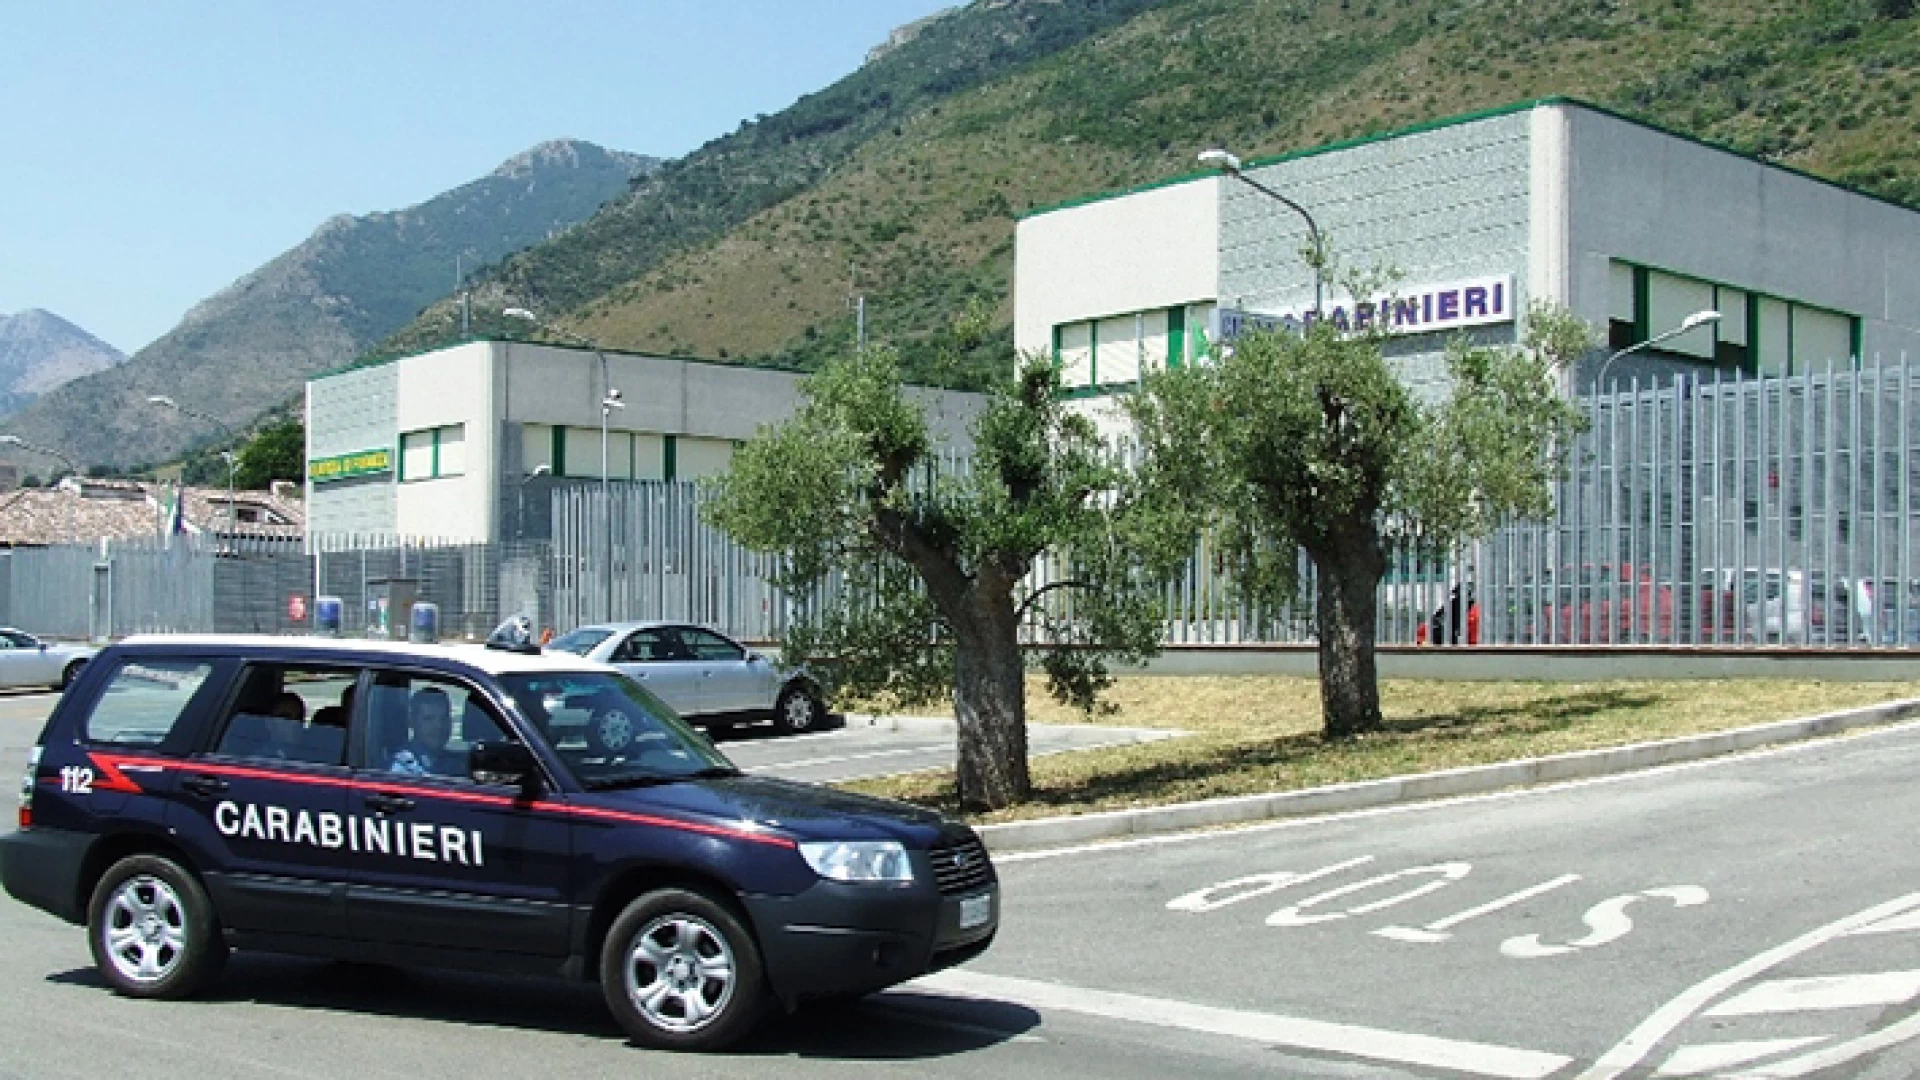 Filignano: Si intestano tredici autovetture e attestano una falsa residenza in provincia di Isernia per truffare le compagnie assicurative, coppia di campani  denunciata dai Carabinieri.